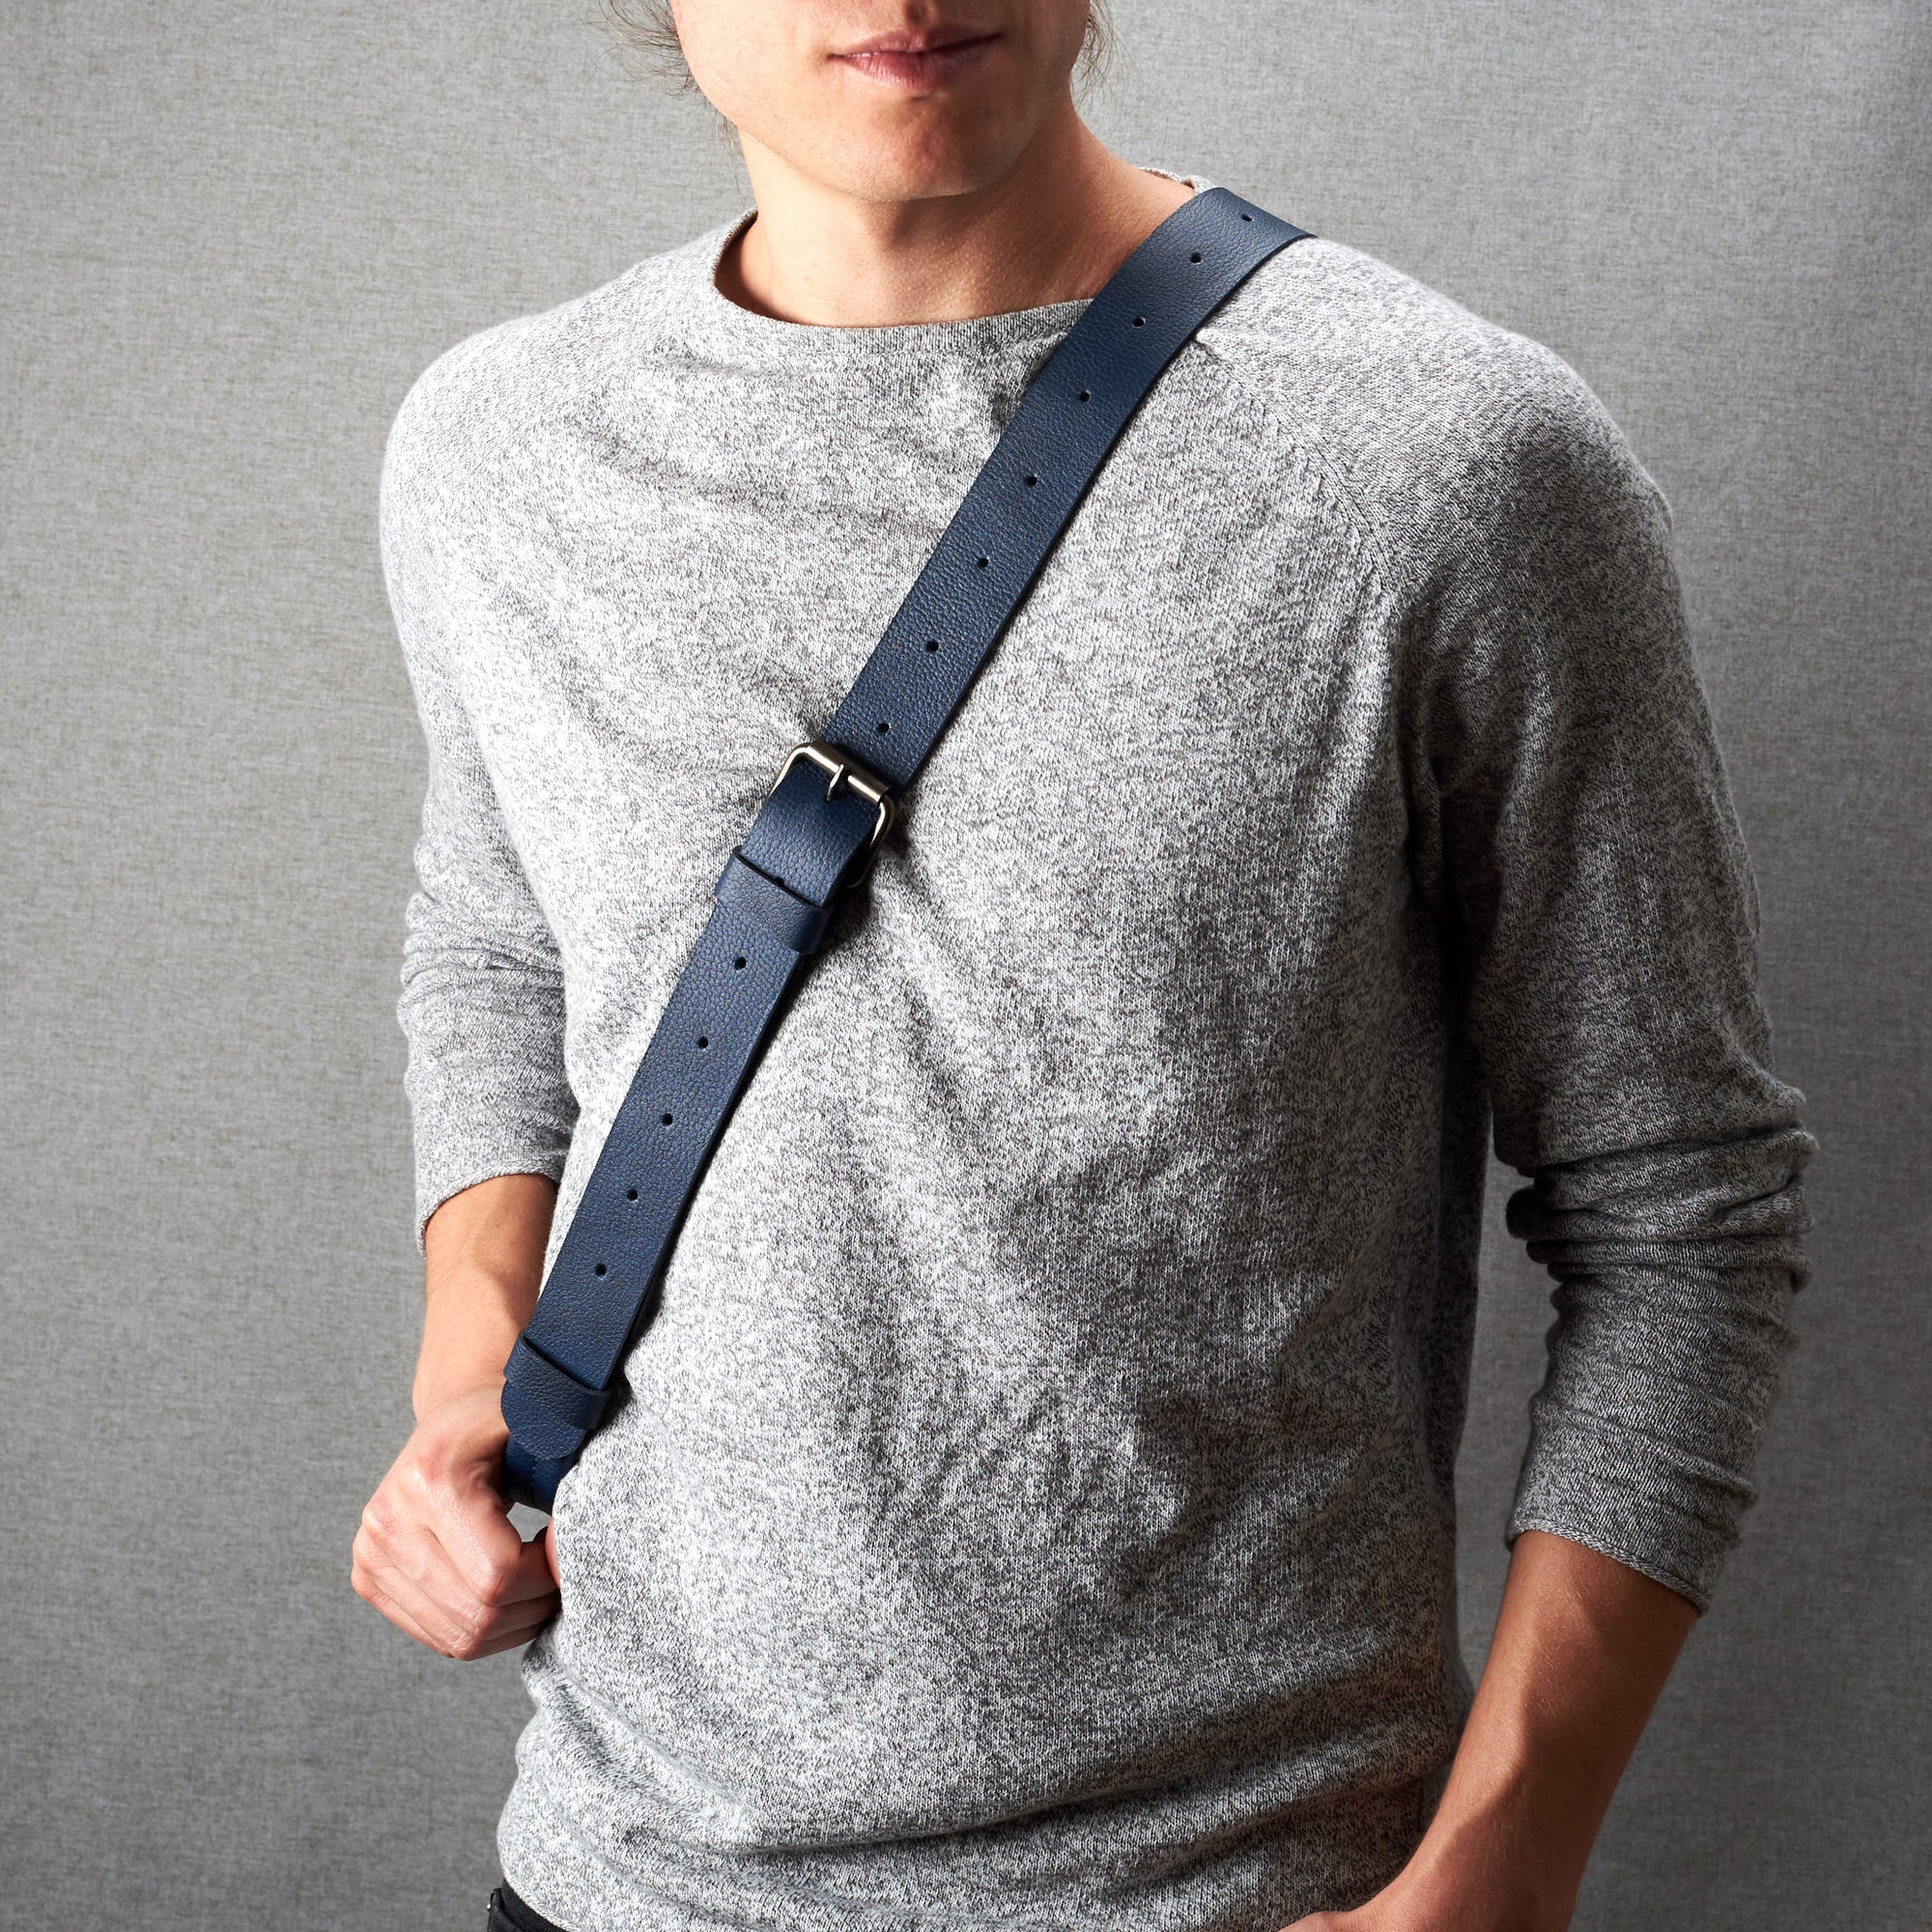 Styling shoulder strap. Fenek blue sling bag for men by Capra Leather. Bicycle backpack, everyday carry messenger bag.